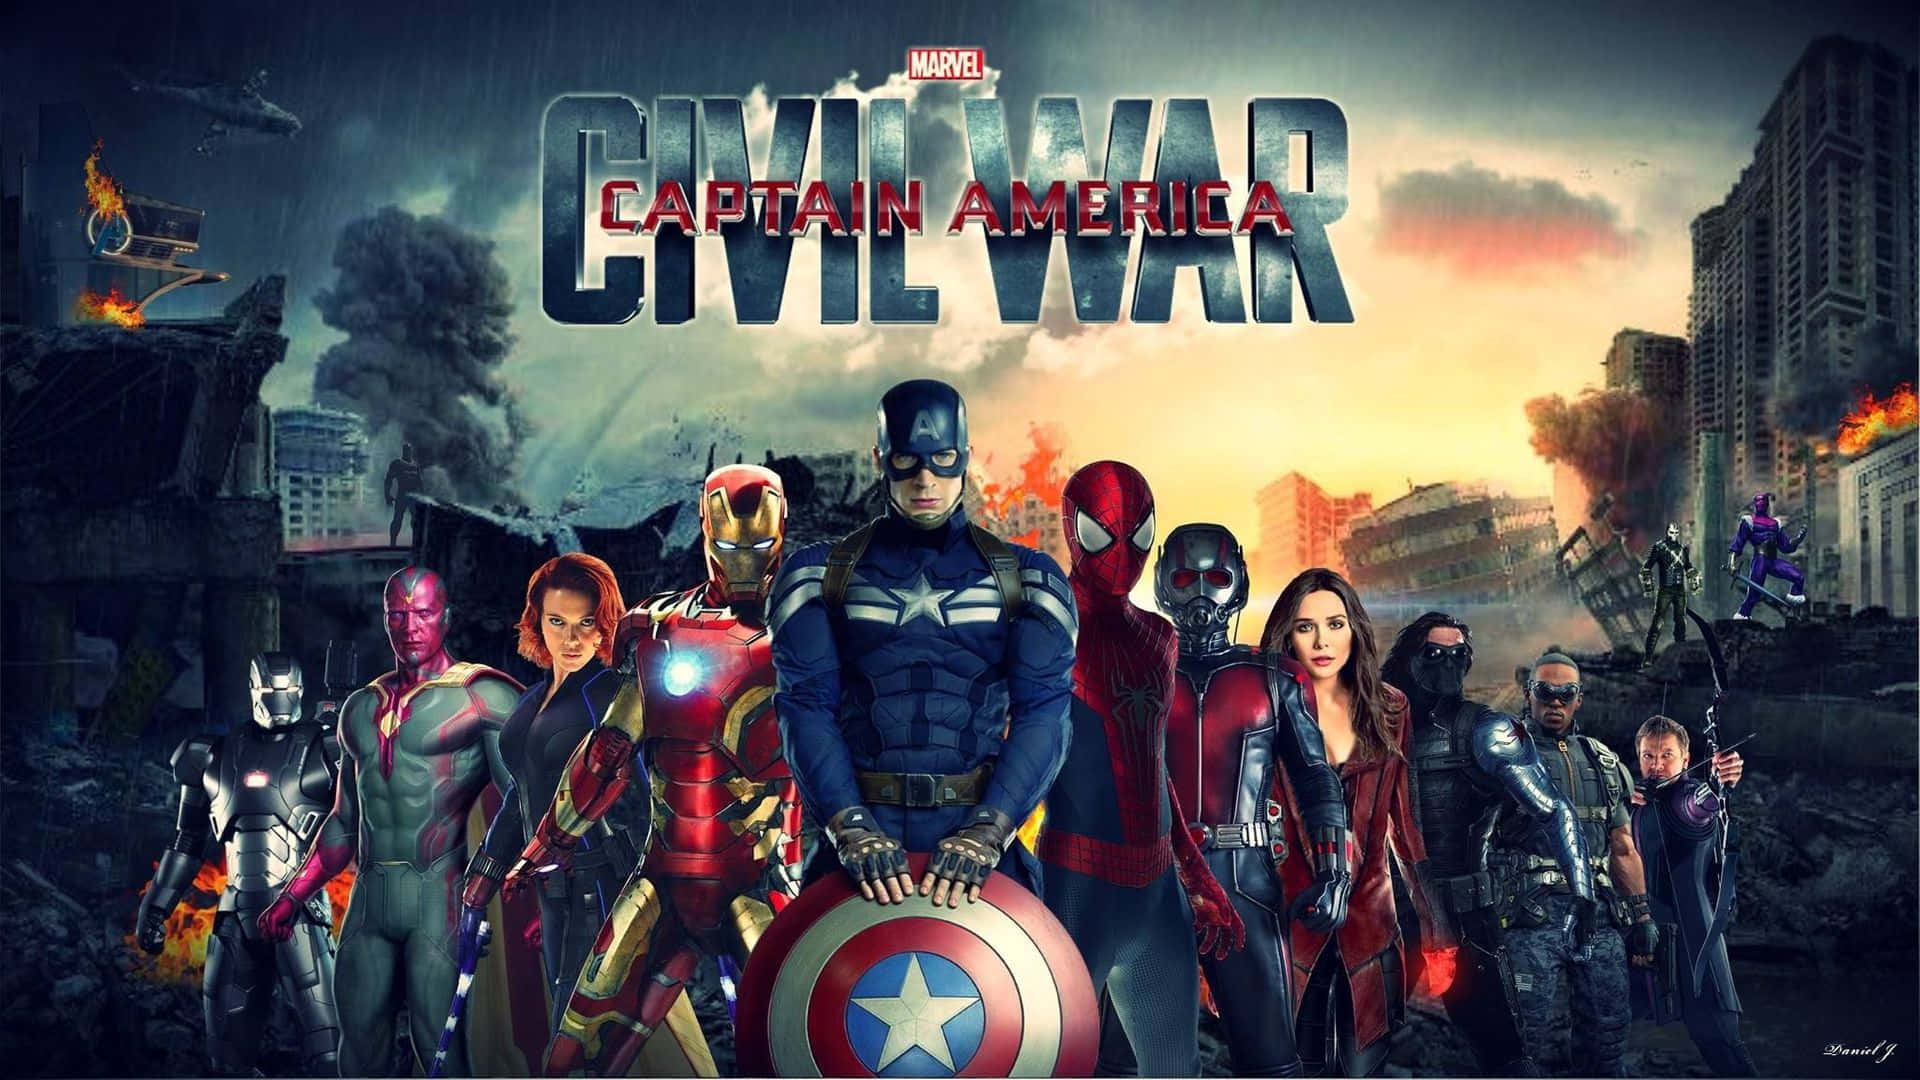 Fremhævende Chris Evans som Captain America Wallpaper